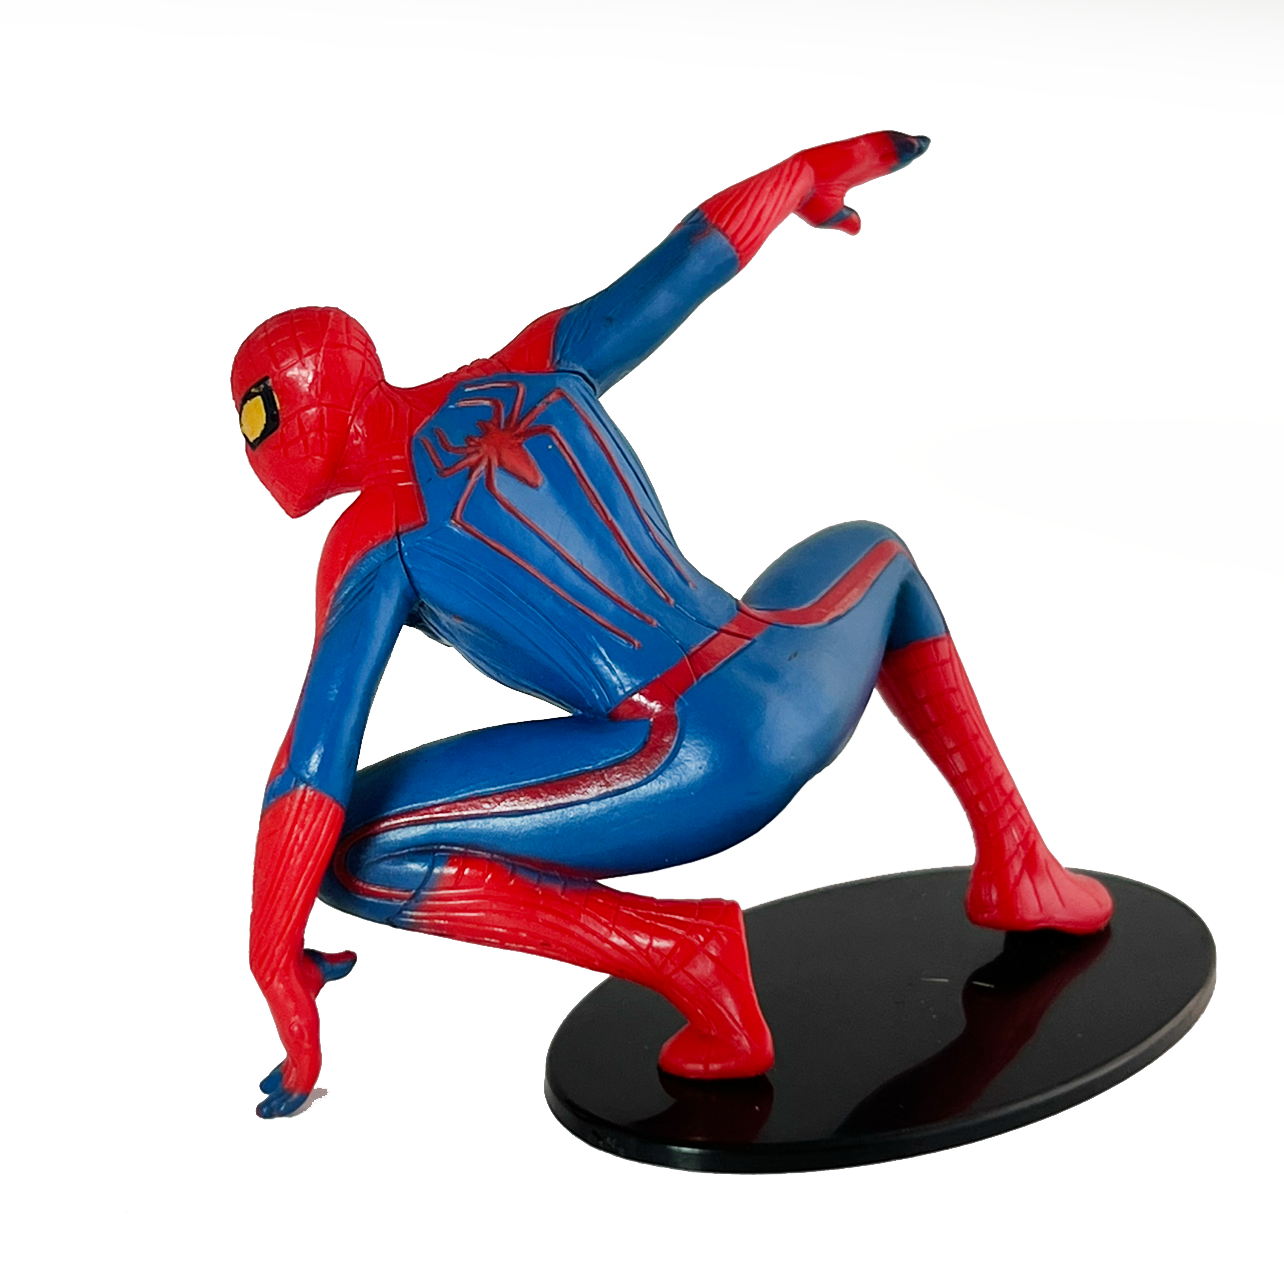 Spiderman figure 3" Tall Plastic loose item